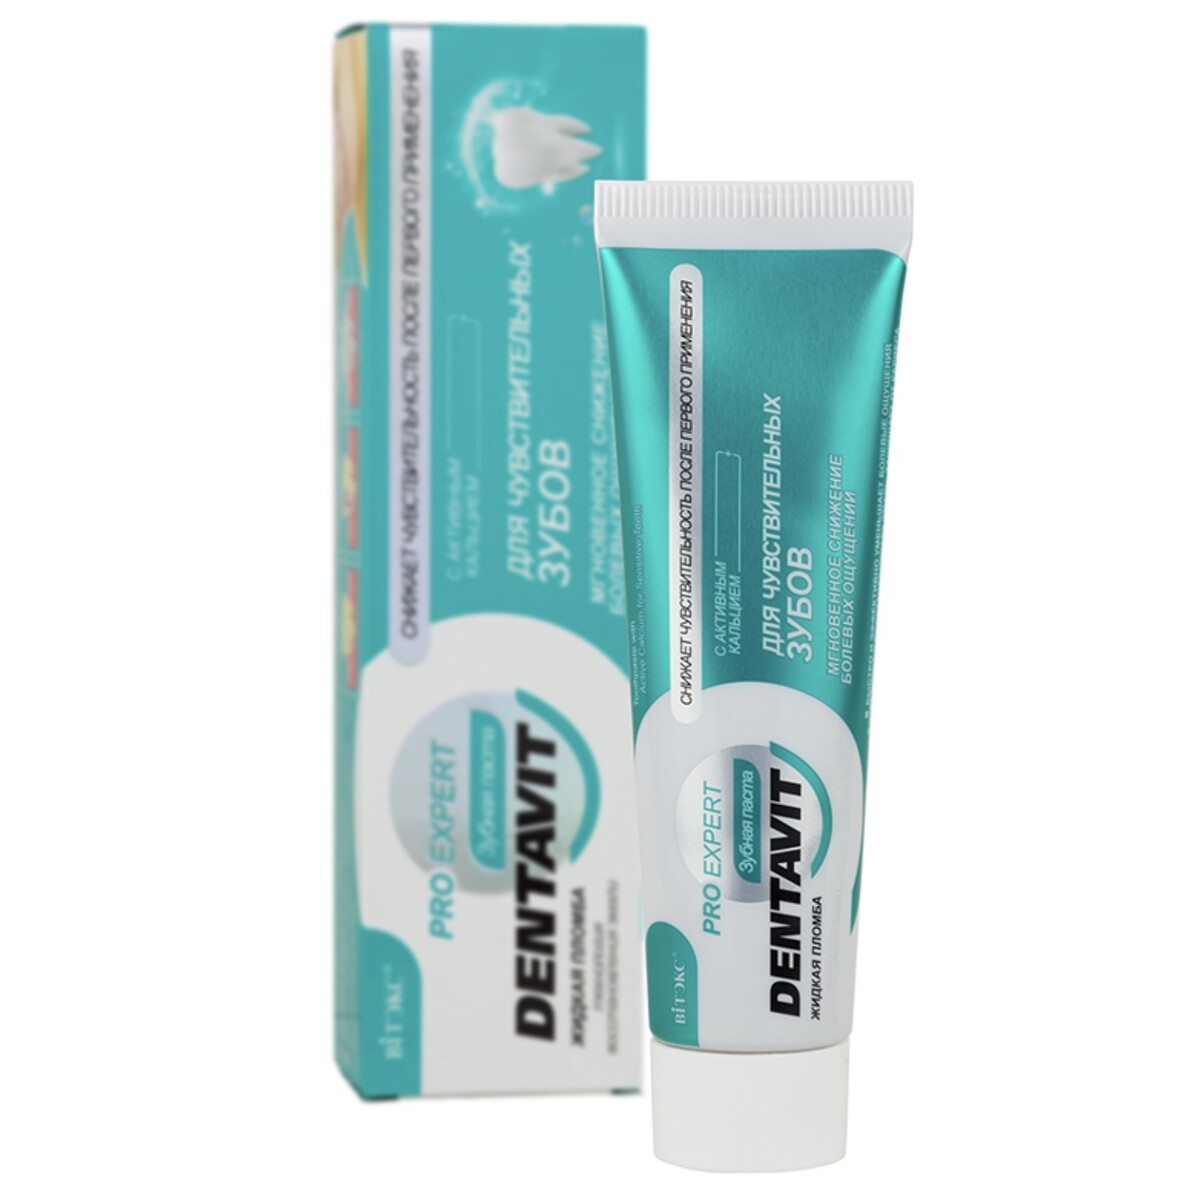 Dentavit pro expert зубная паста для чувствительных зубов с активным кальцием, 85 г.+ коробка зубная паста сенсодин мгновенный эффект для чувствительных зубов 75мл